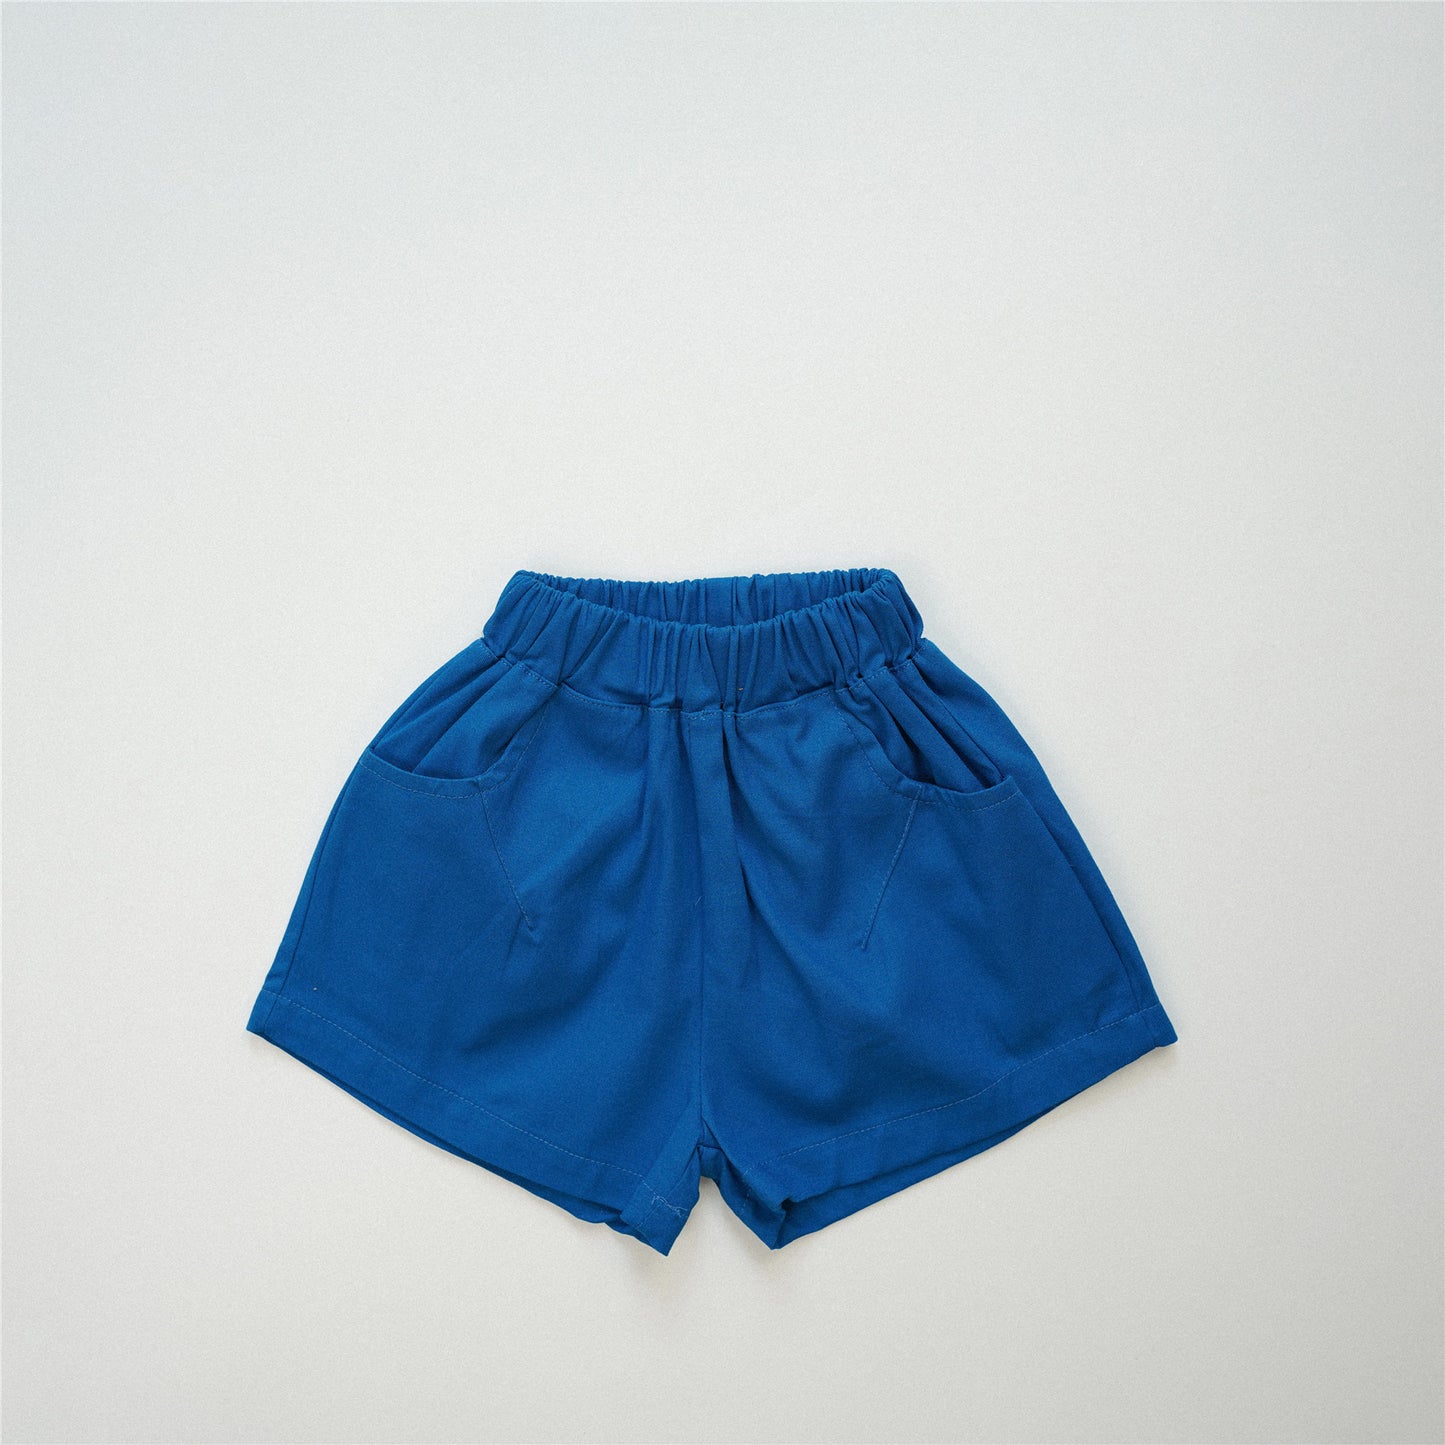 【S4042621】夏季款 兒童短褲 褲子 水洗純棉 五分短褲-4色